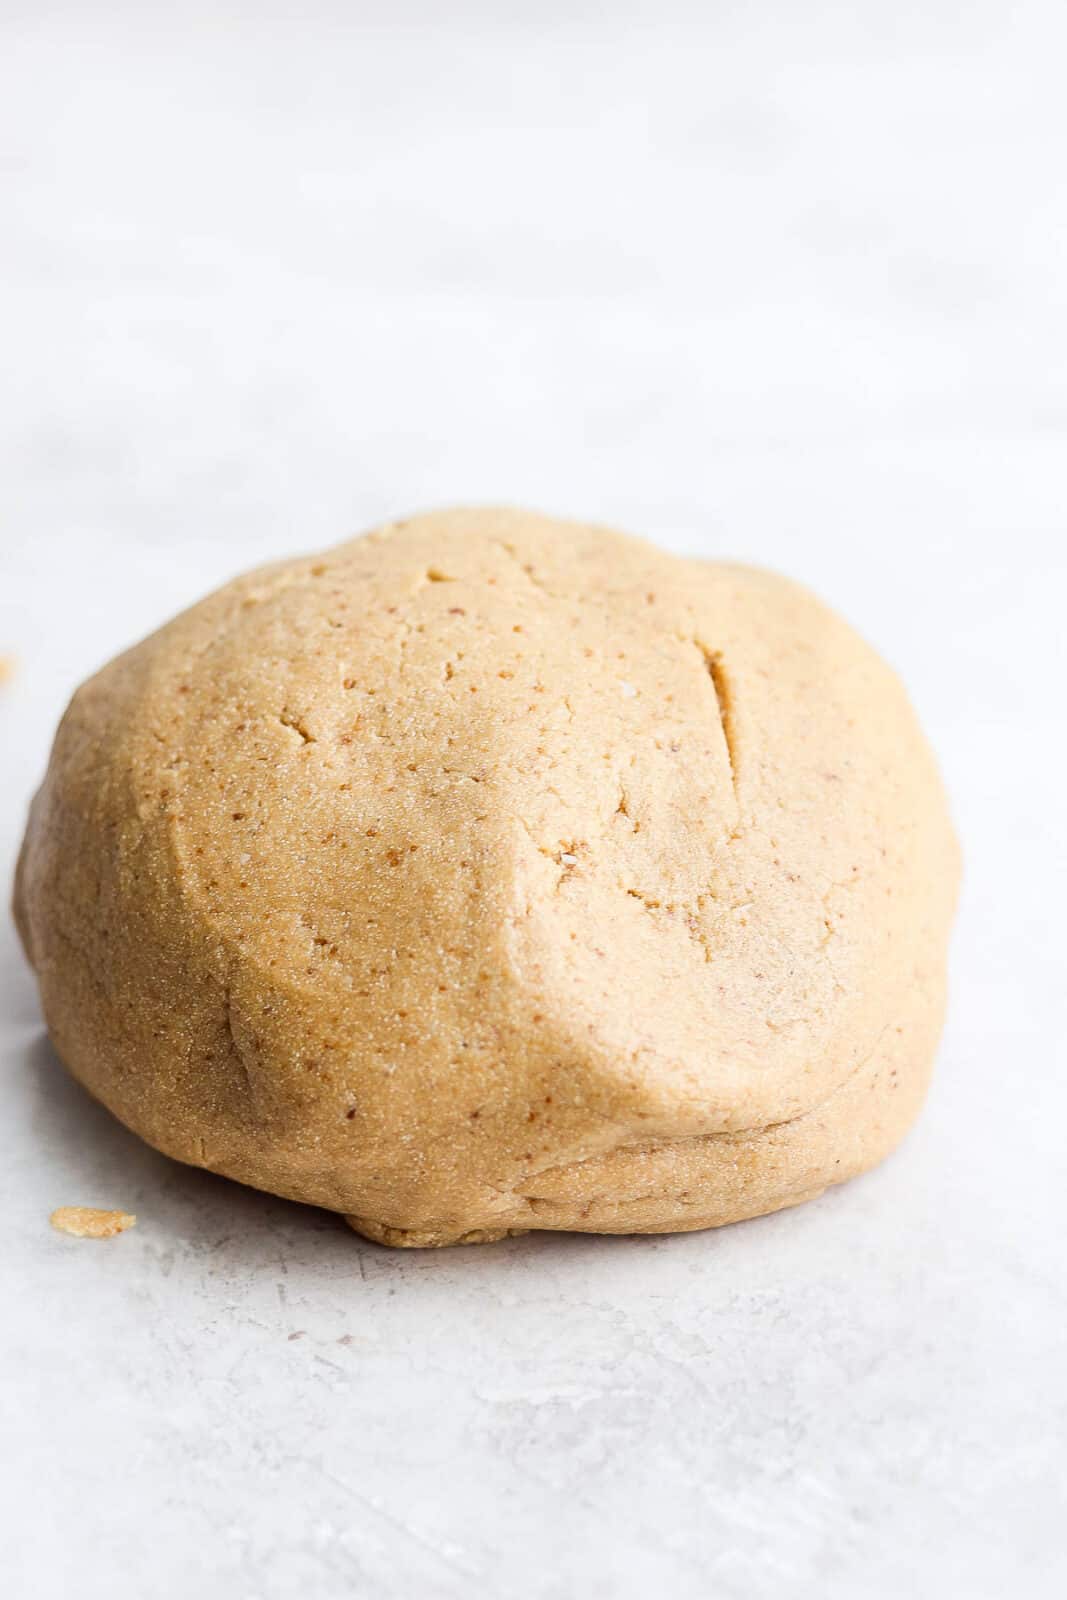 Almond flour sugar cookie dough in a ball.